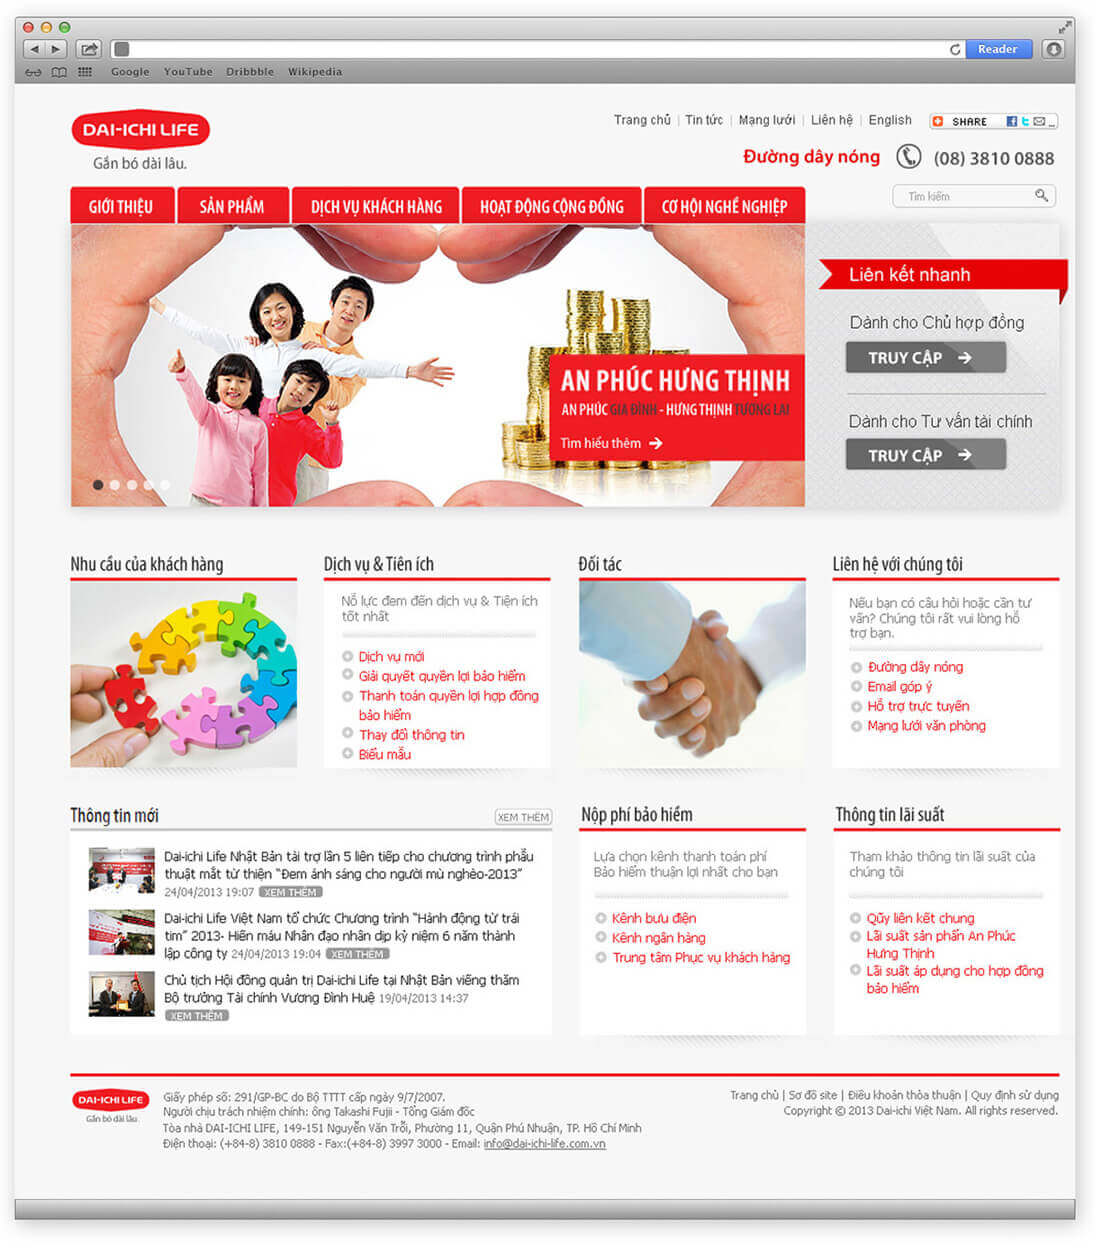 Cánh Cam thiết kế website cho Dai-Ichi Life ảnh 5